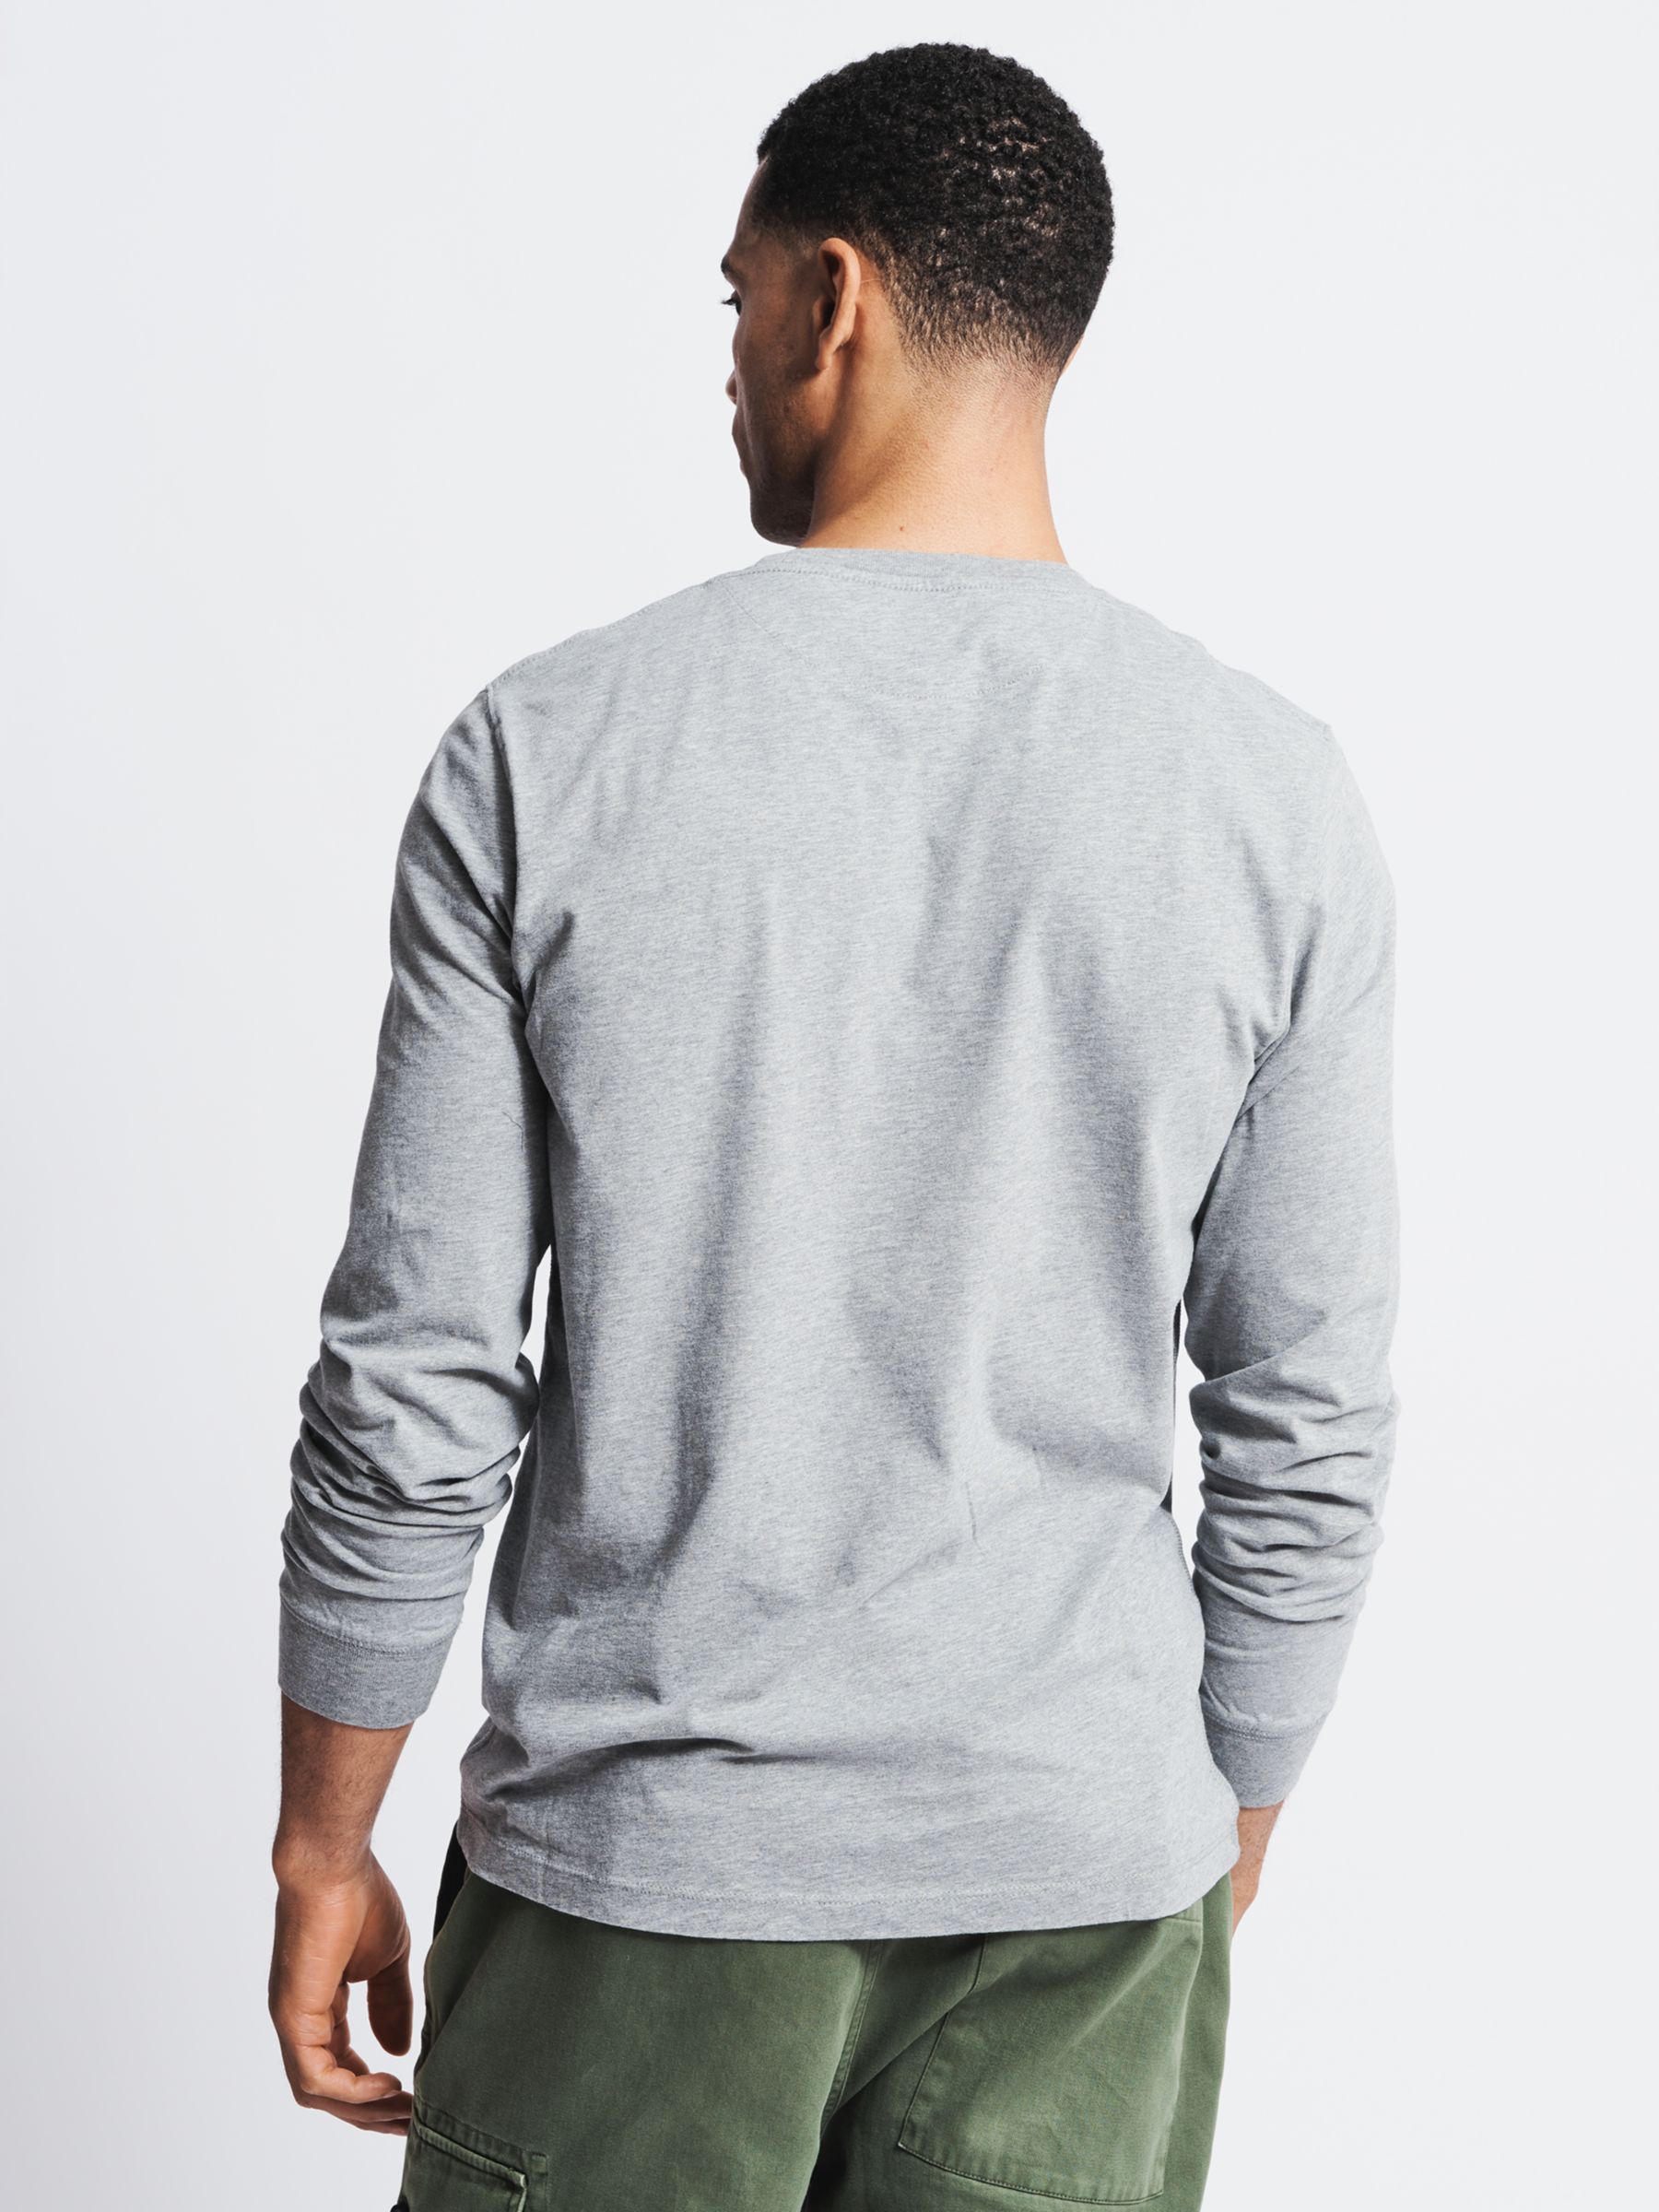 Aubin Buttermere Long Sleeve Cotton Logo T-Shirt, Grey Marl, S